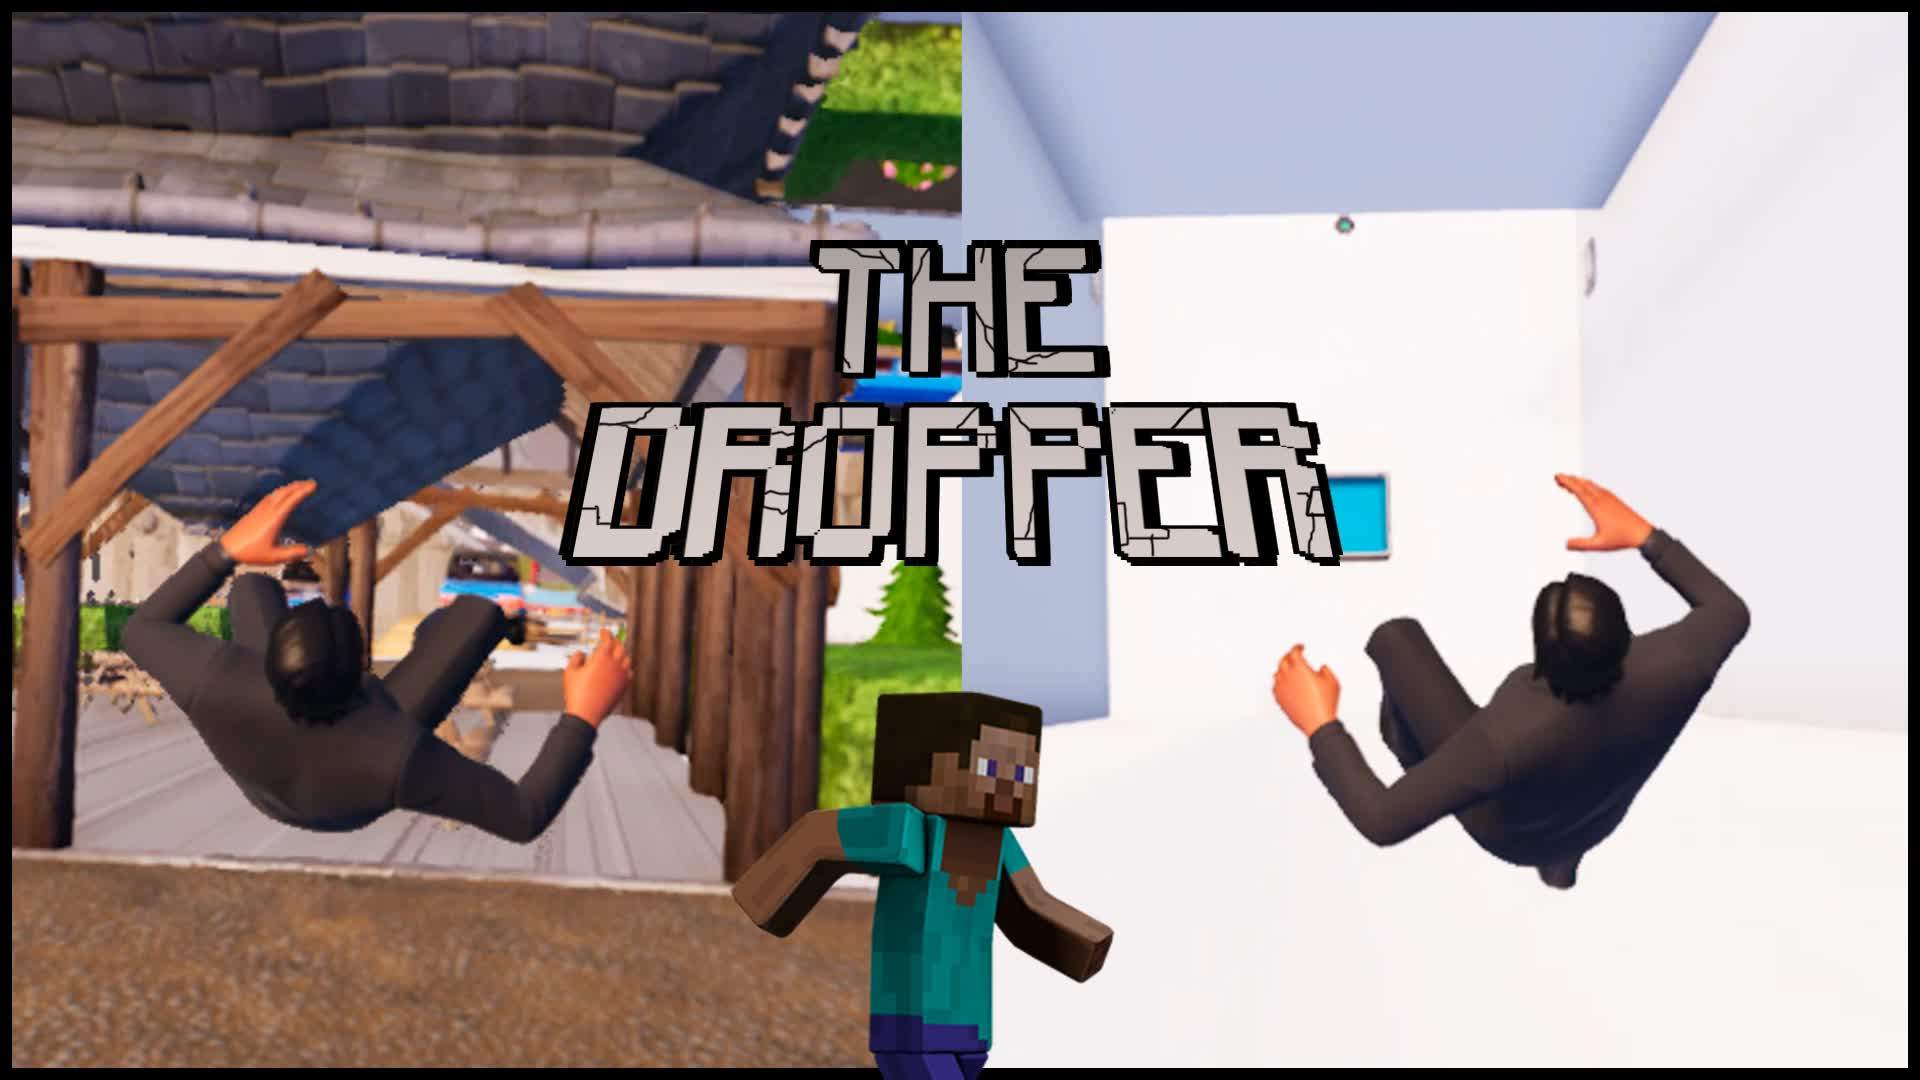 THE DROPPER FORTNITE! 0862-3993-2052